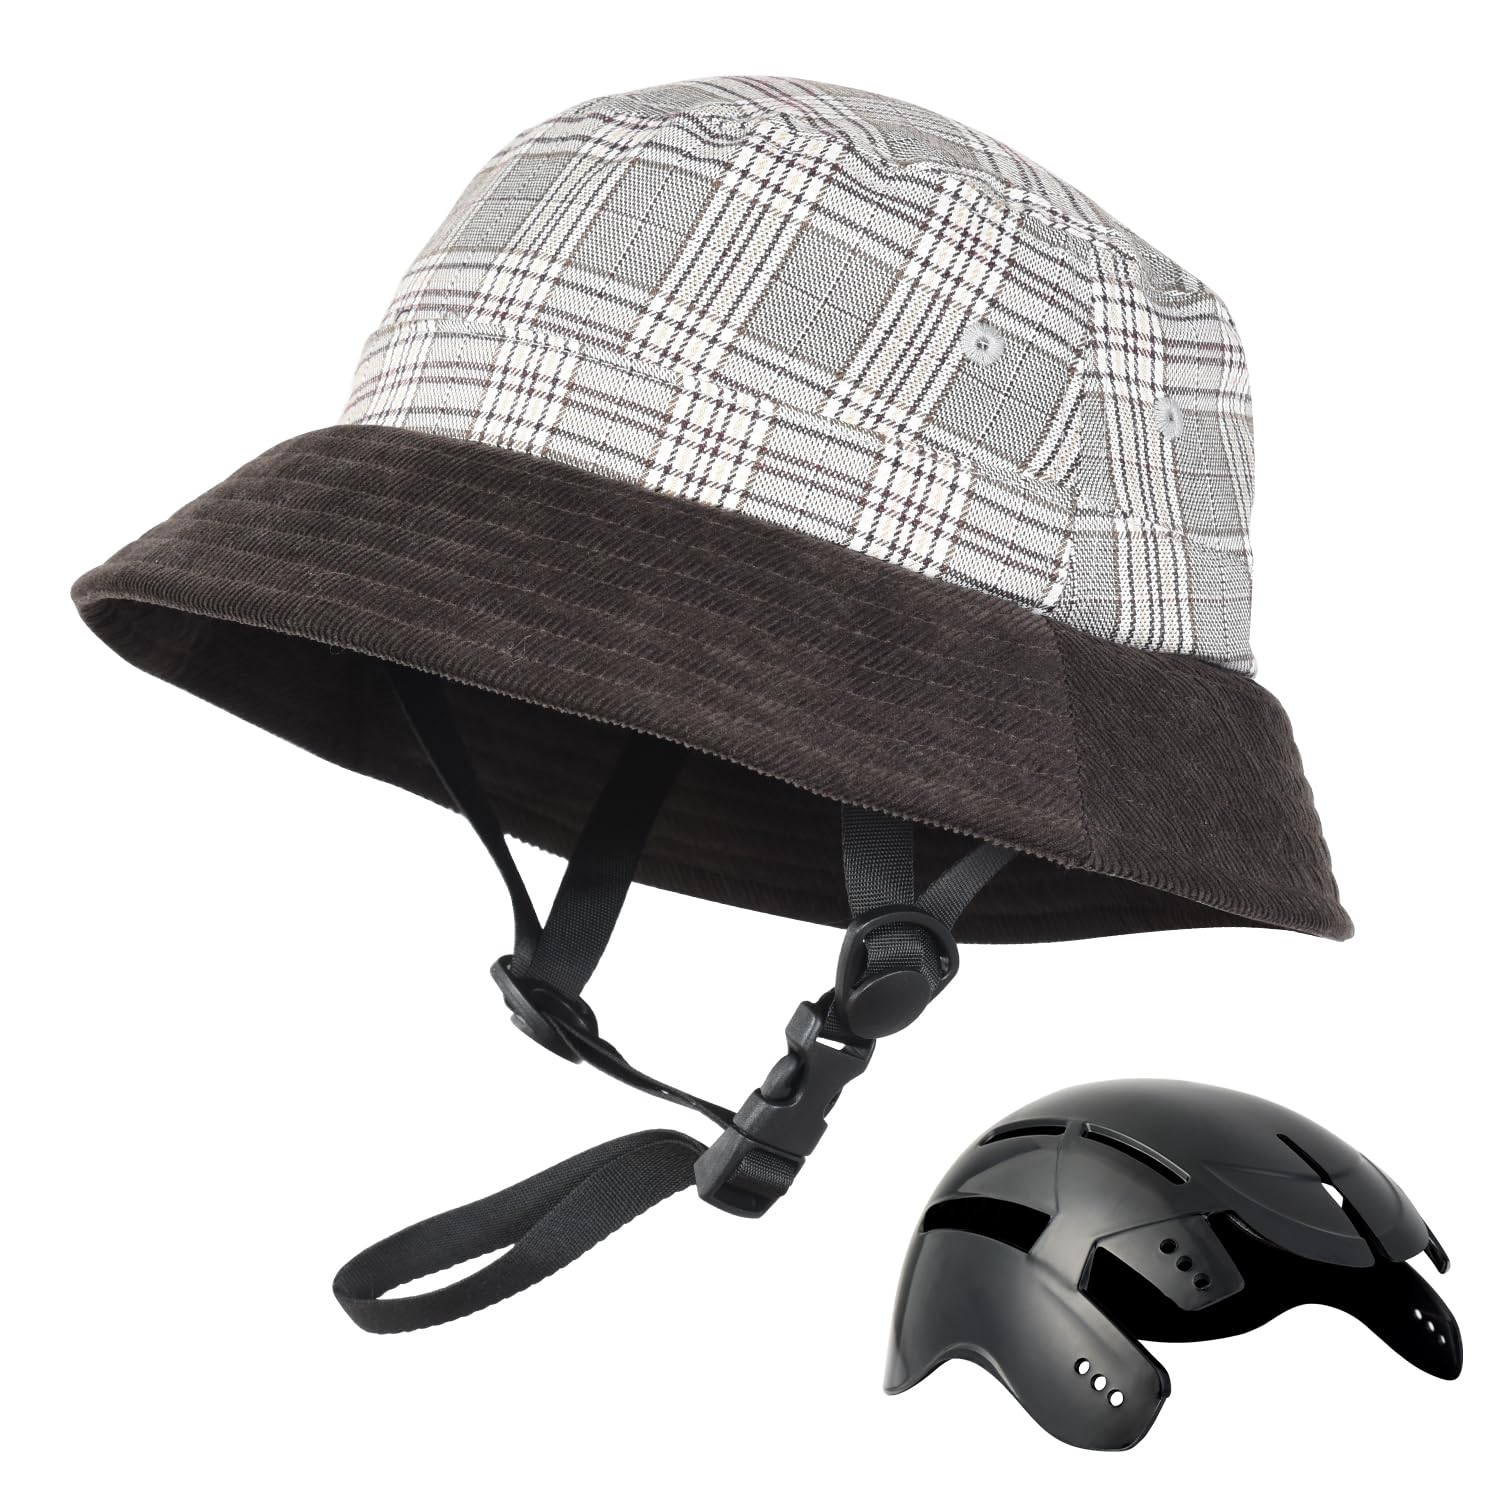 UTEBIT 自転車 ヘルメット CE認証 ヘルメット 大人 頭囲58~60cm 女性 帽子型ヘルメット 軽量 通気 ロードバイク ヘルメット 耐衝撃 レディヘルメット 帽子 キャップ 日焼け止め 自転車用 女性…